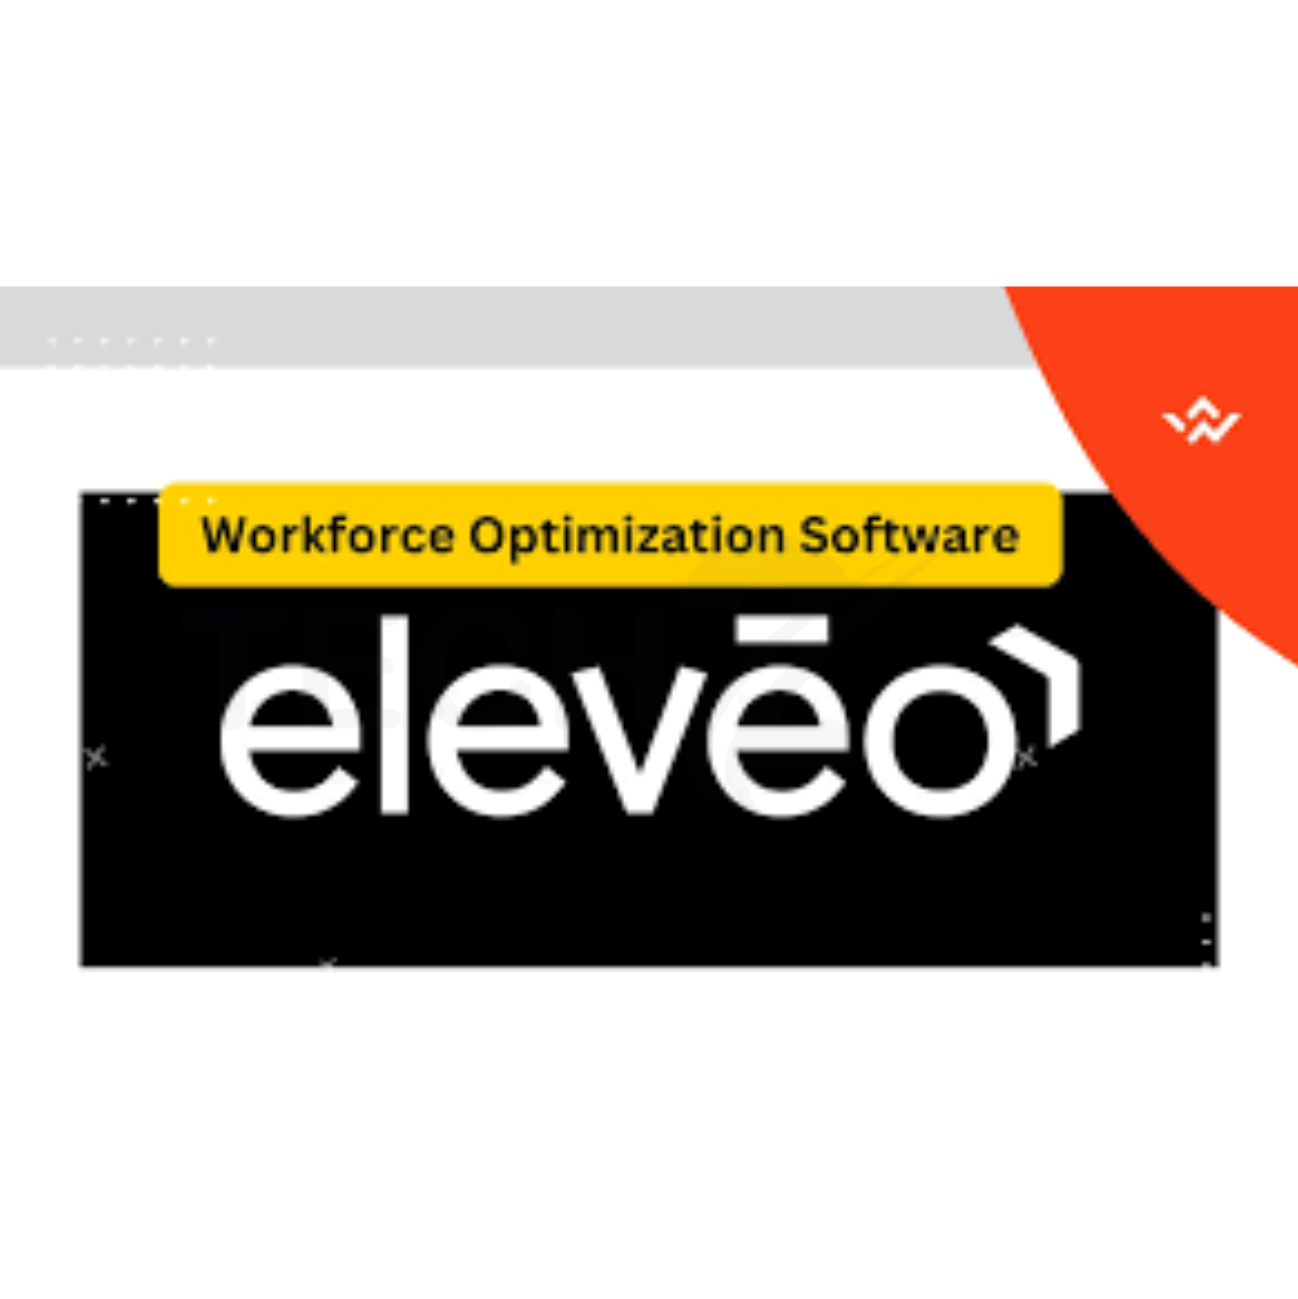 Workforce Software Eleveo